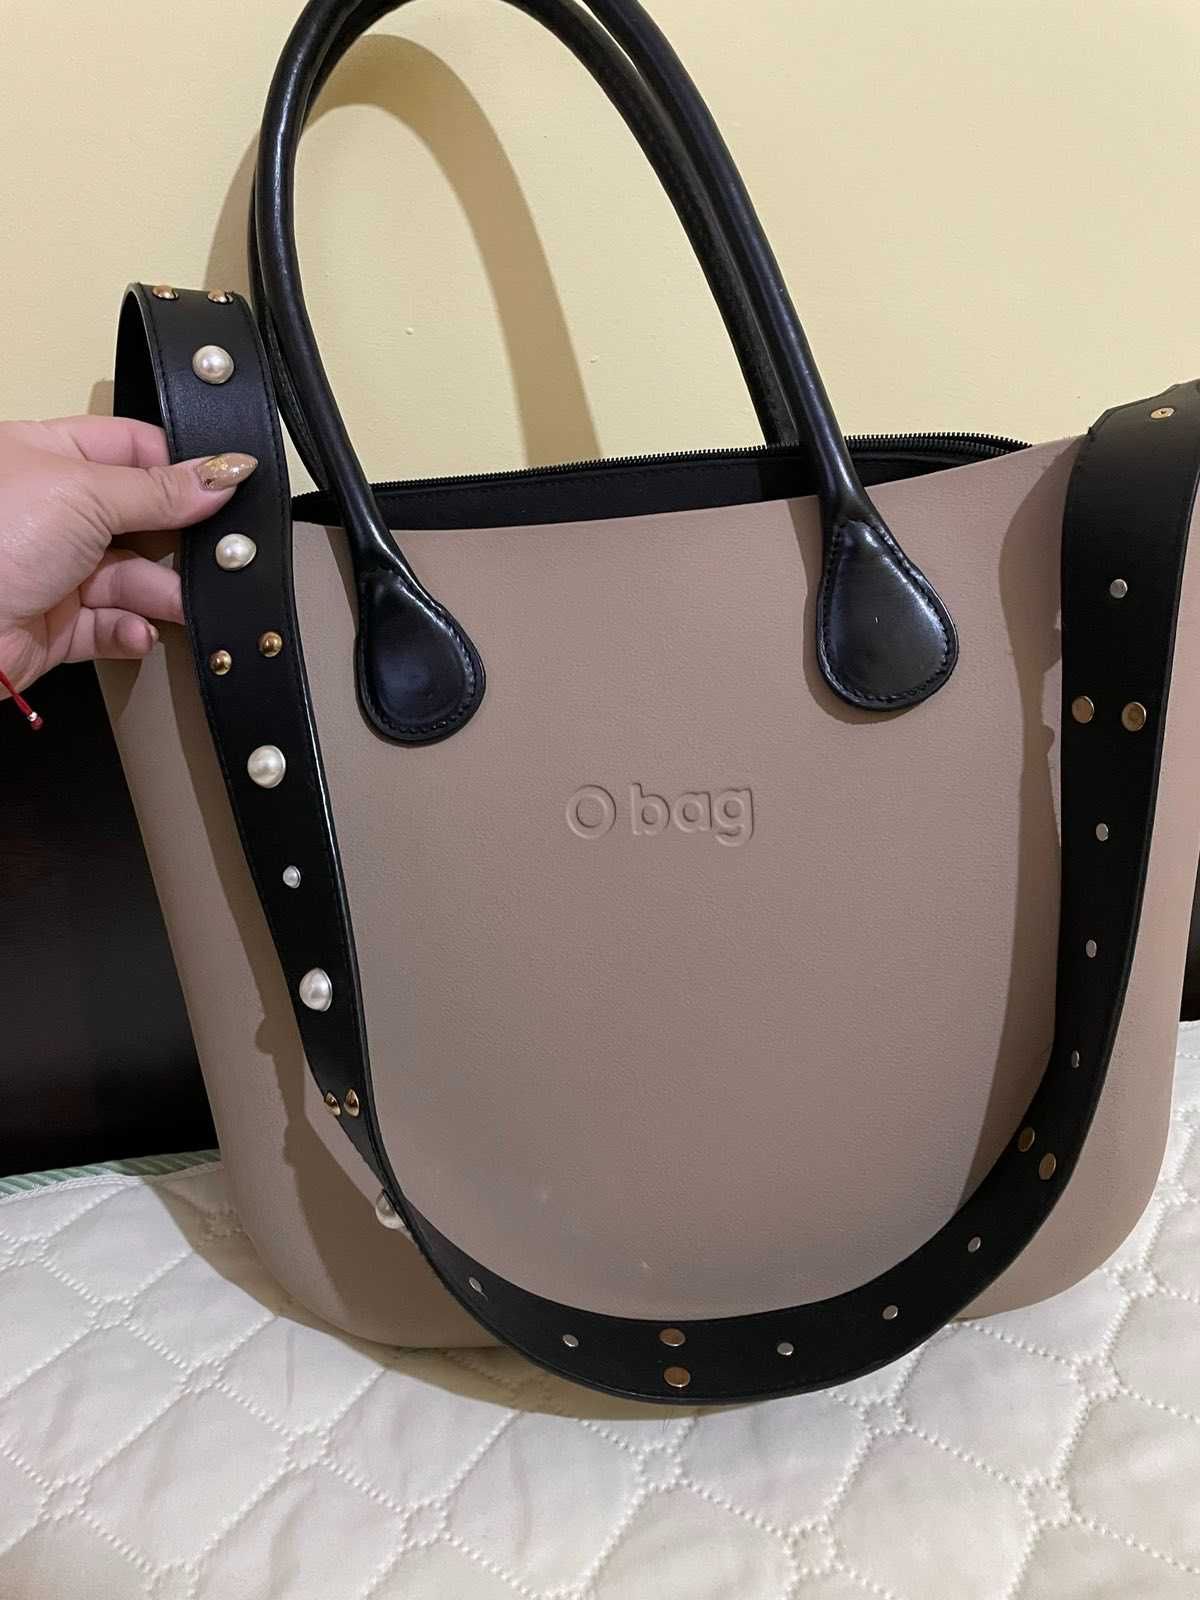 Използвана чанта Obag